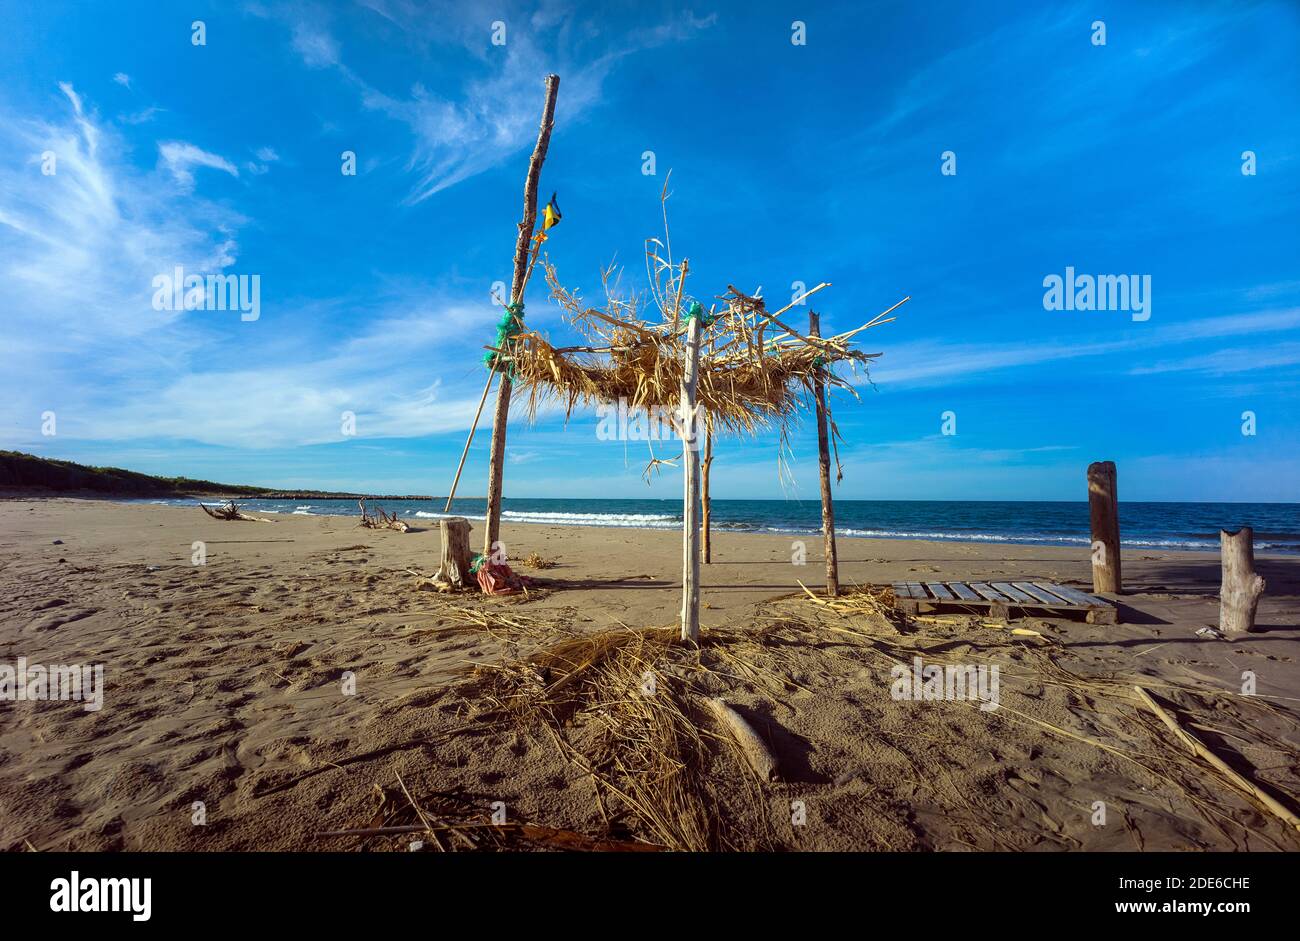 Campomarino, Molise, Italie : cabane sur la plage Banque D'Images